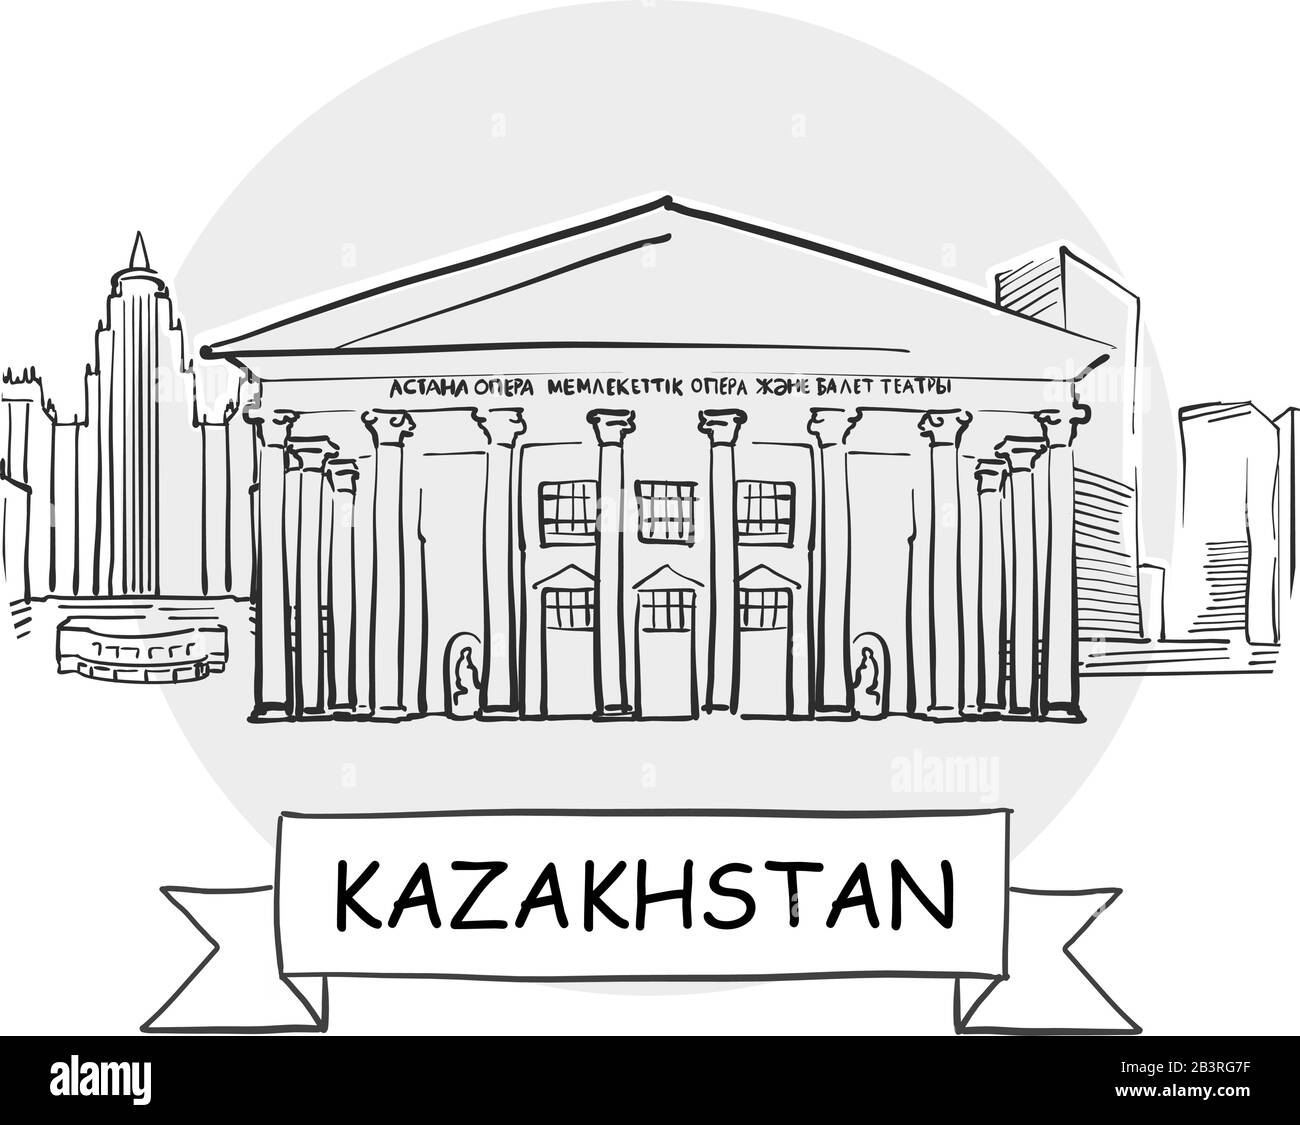 Kazakistan Disegnato A Mano Urban Vector Sign. Illustrazione Della Linea Nera Con Barra Multifunzione E Titolo. Illustrazione Vettoriale